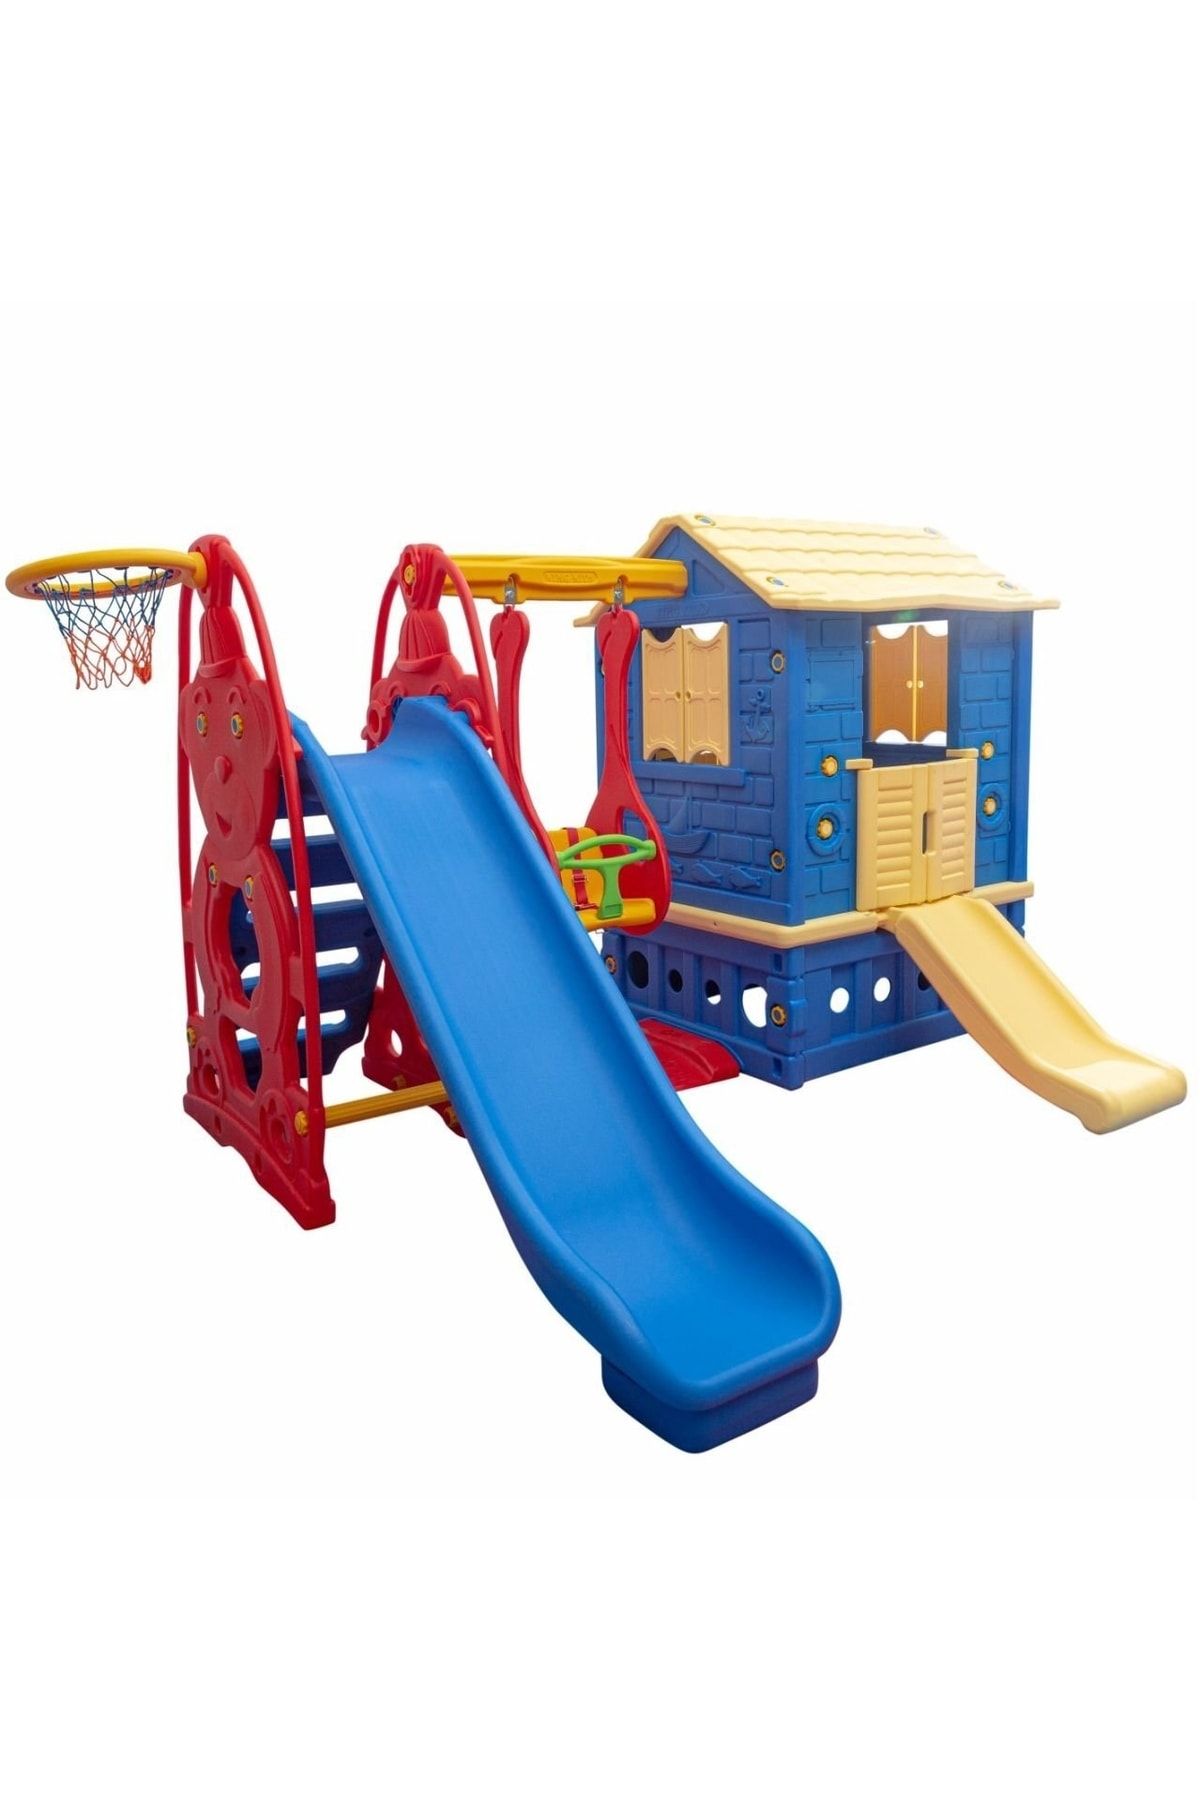 TOYSTAR Çocuk Oyun Parkı - Oyun Alanı - Park Kaydırak - Park Salıncak - Oyun Evi Büyük Park Seti